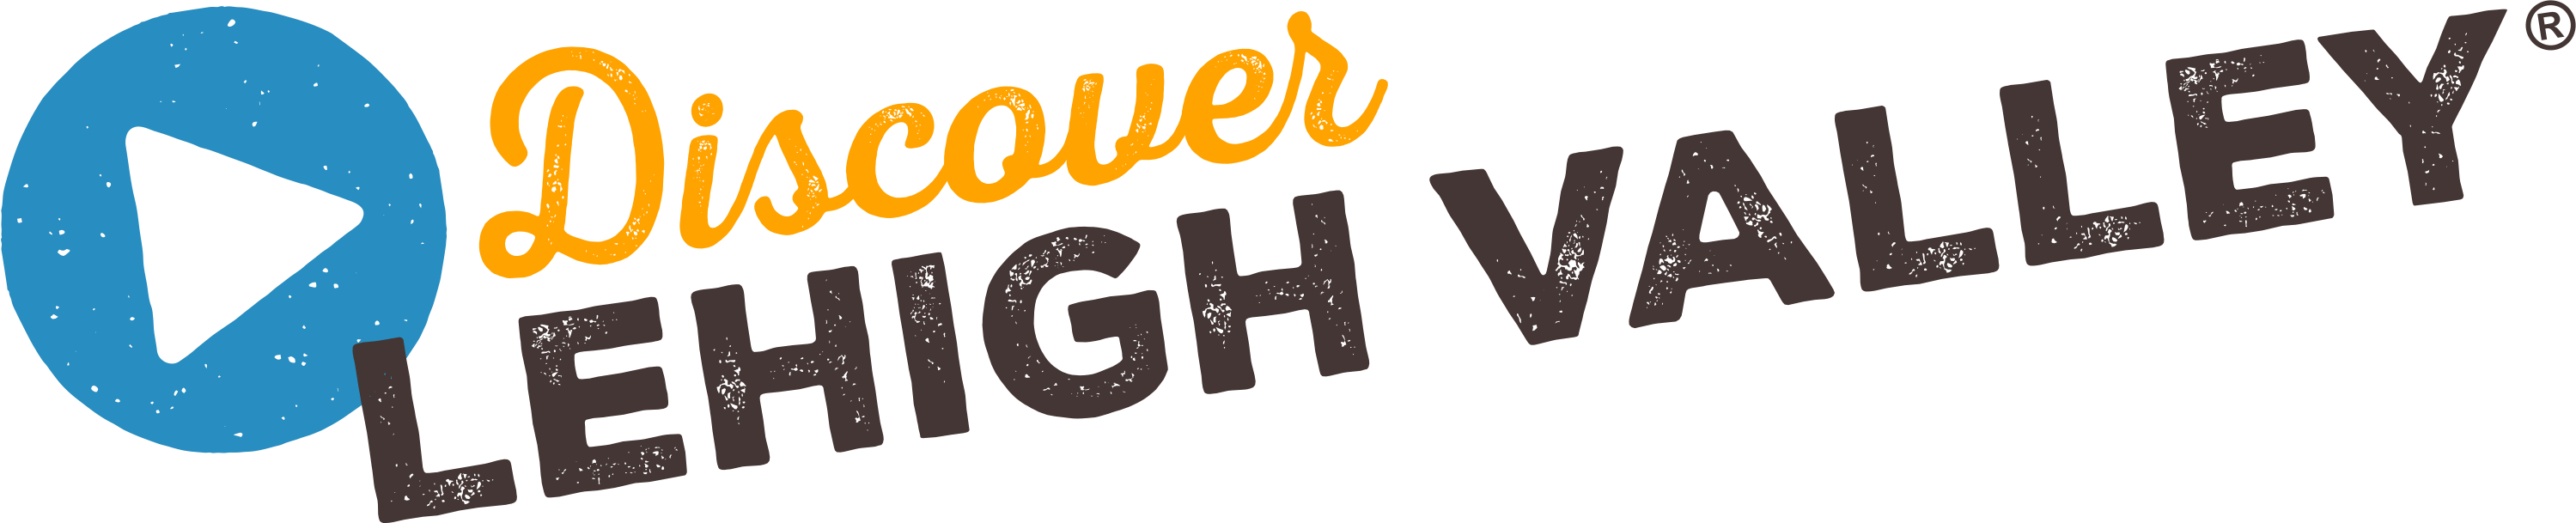 Lehigh Logo - Discover Lehigh Valley® Logo